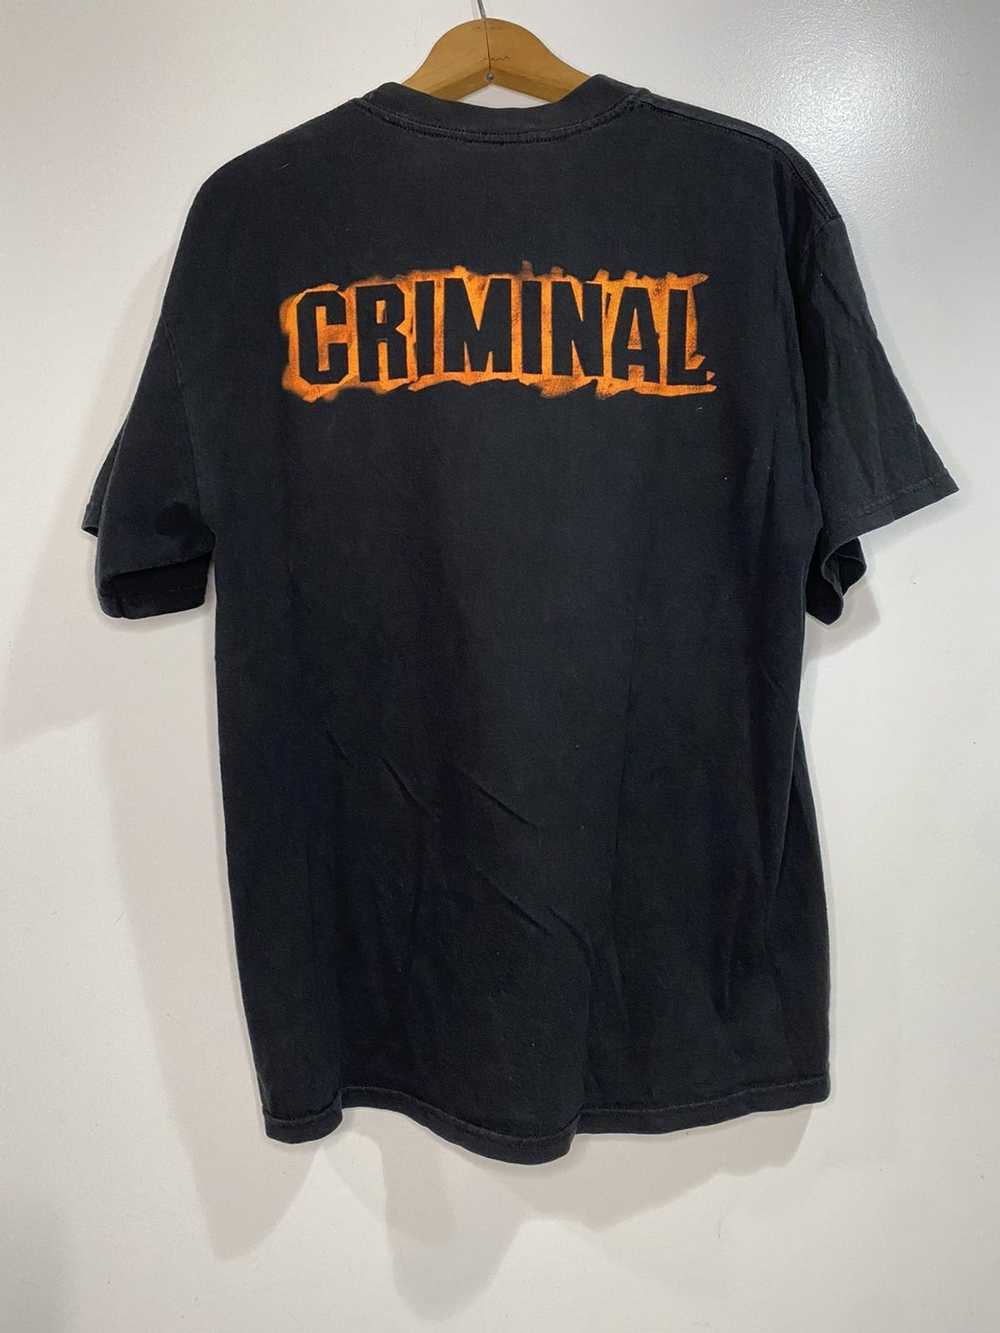 Vintage Vintage Eminem criminal tee size large - image 2